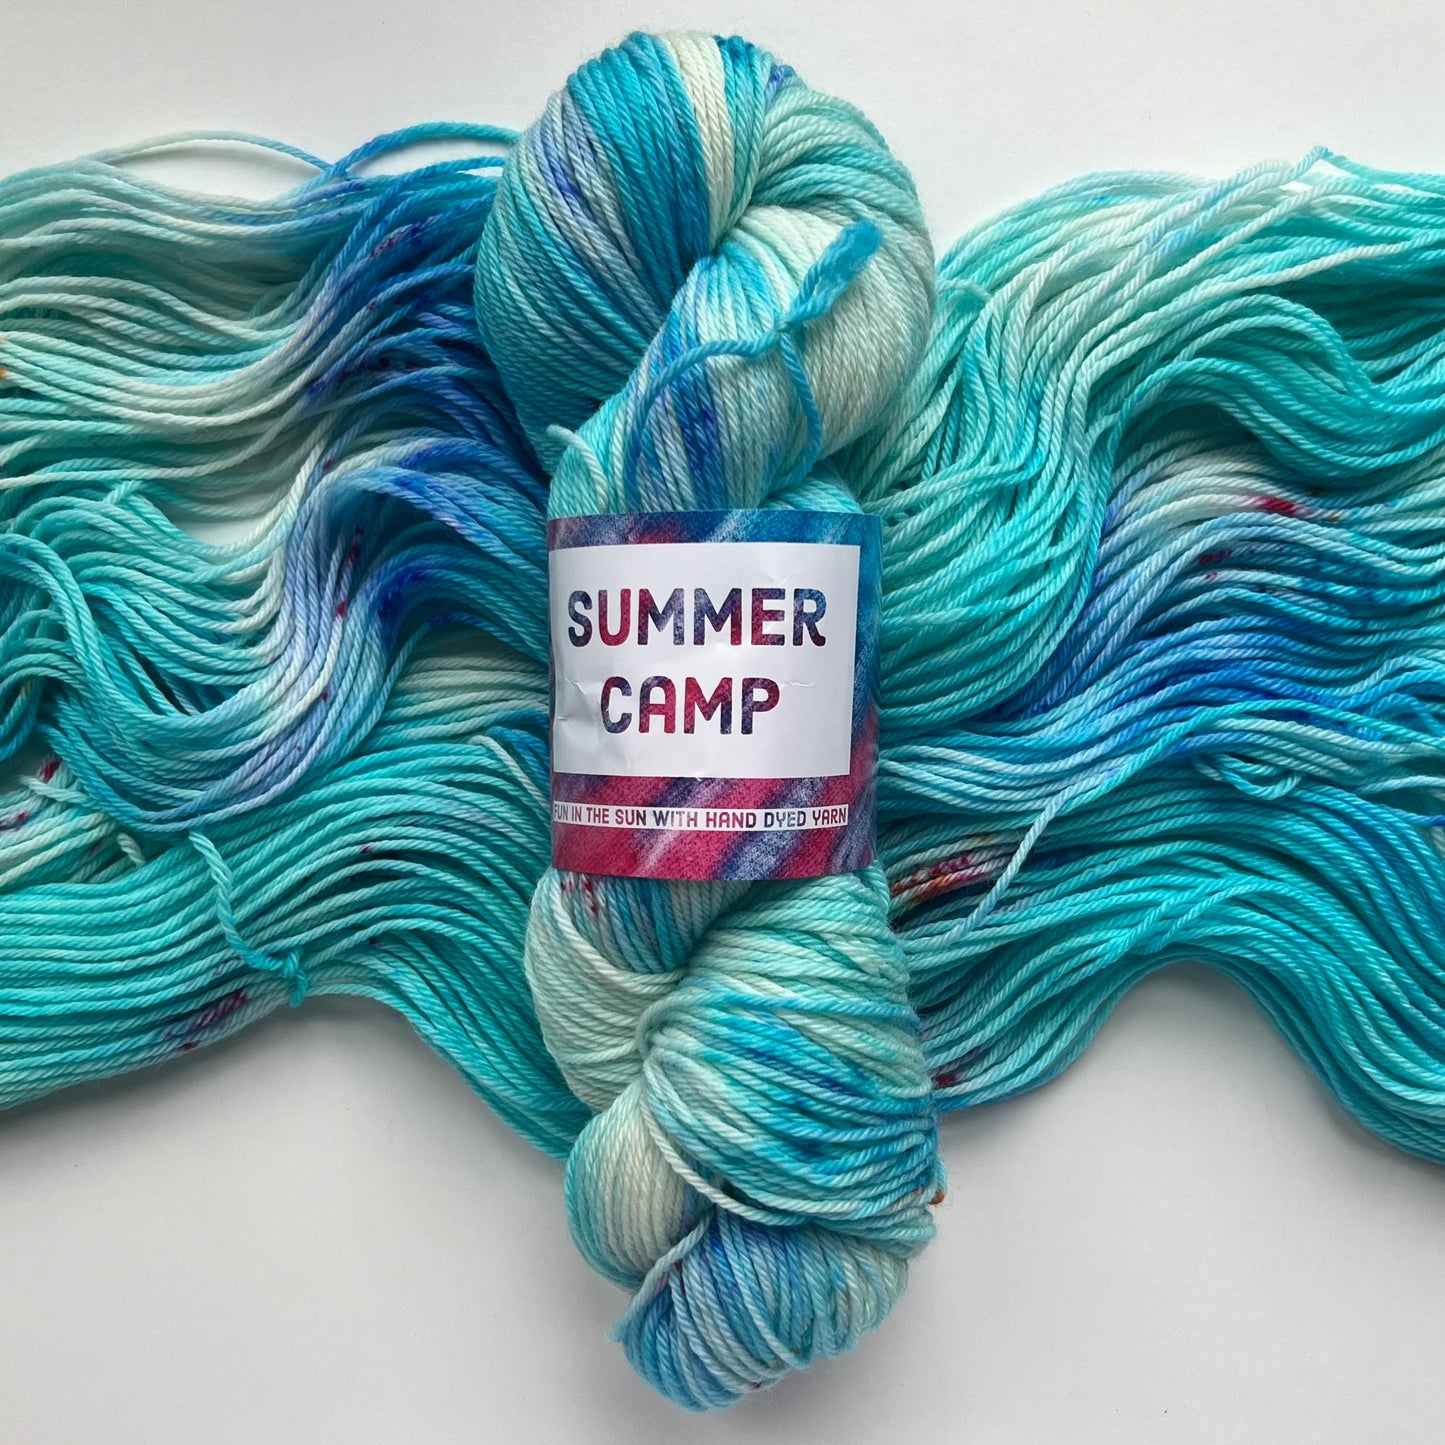 Hipster Shawl by Joji Locatelli - Summer Camp Fibers Project Kit